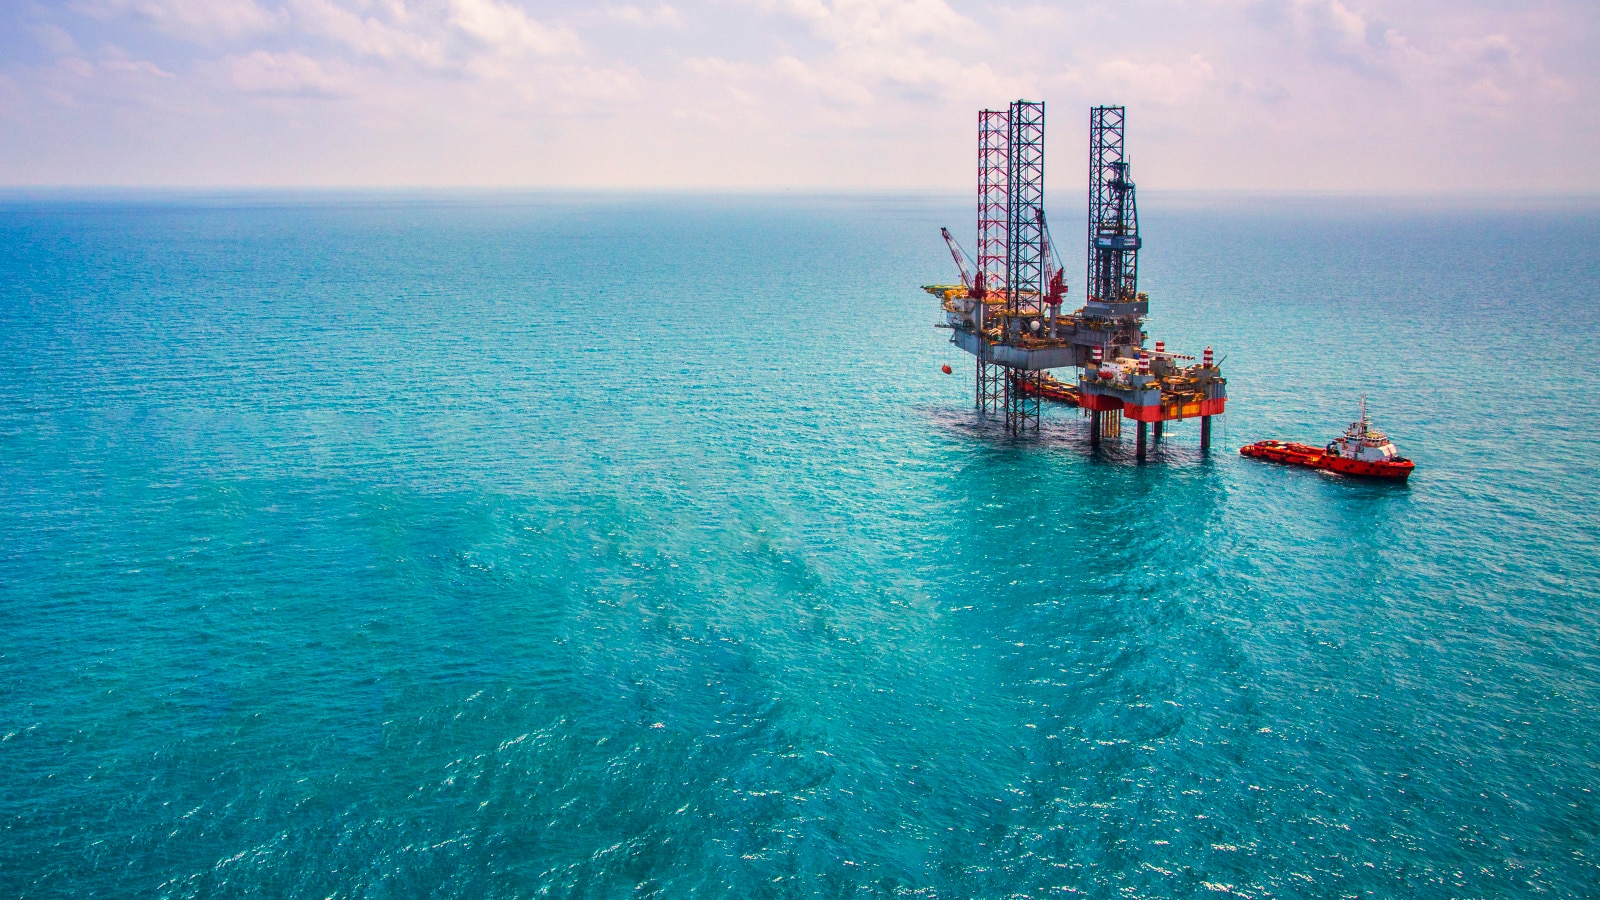 Oil and gas platform is ocean